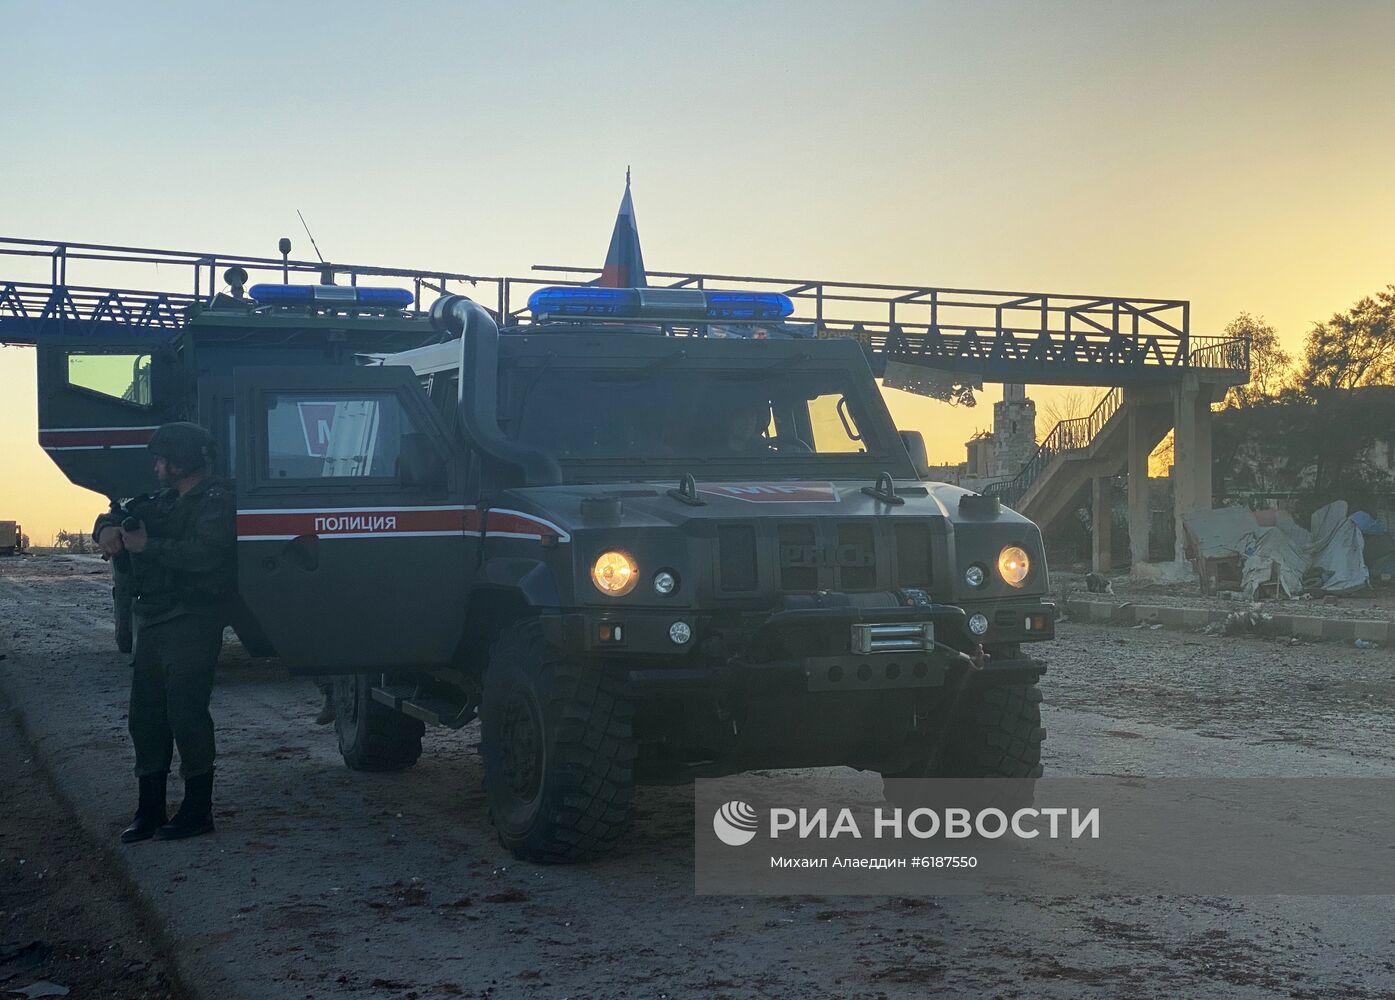 Российская военная полиция в сирийской провинции Идлиб